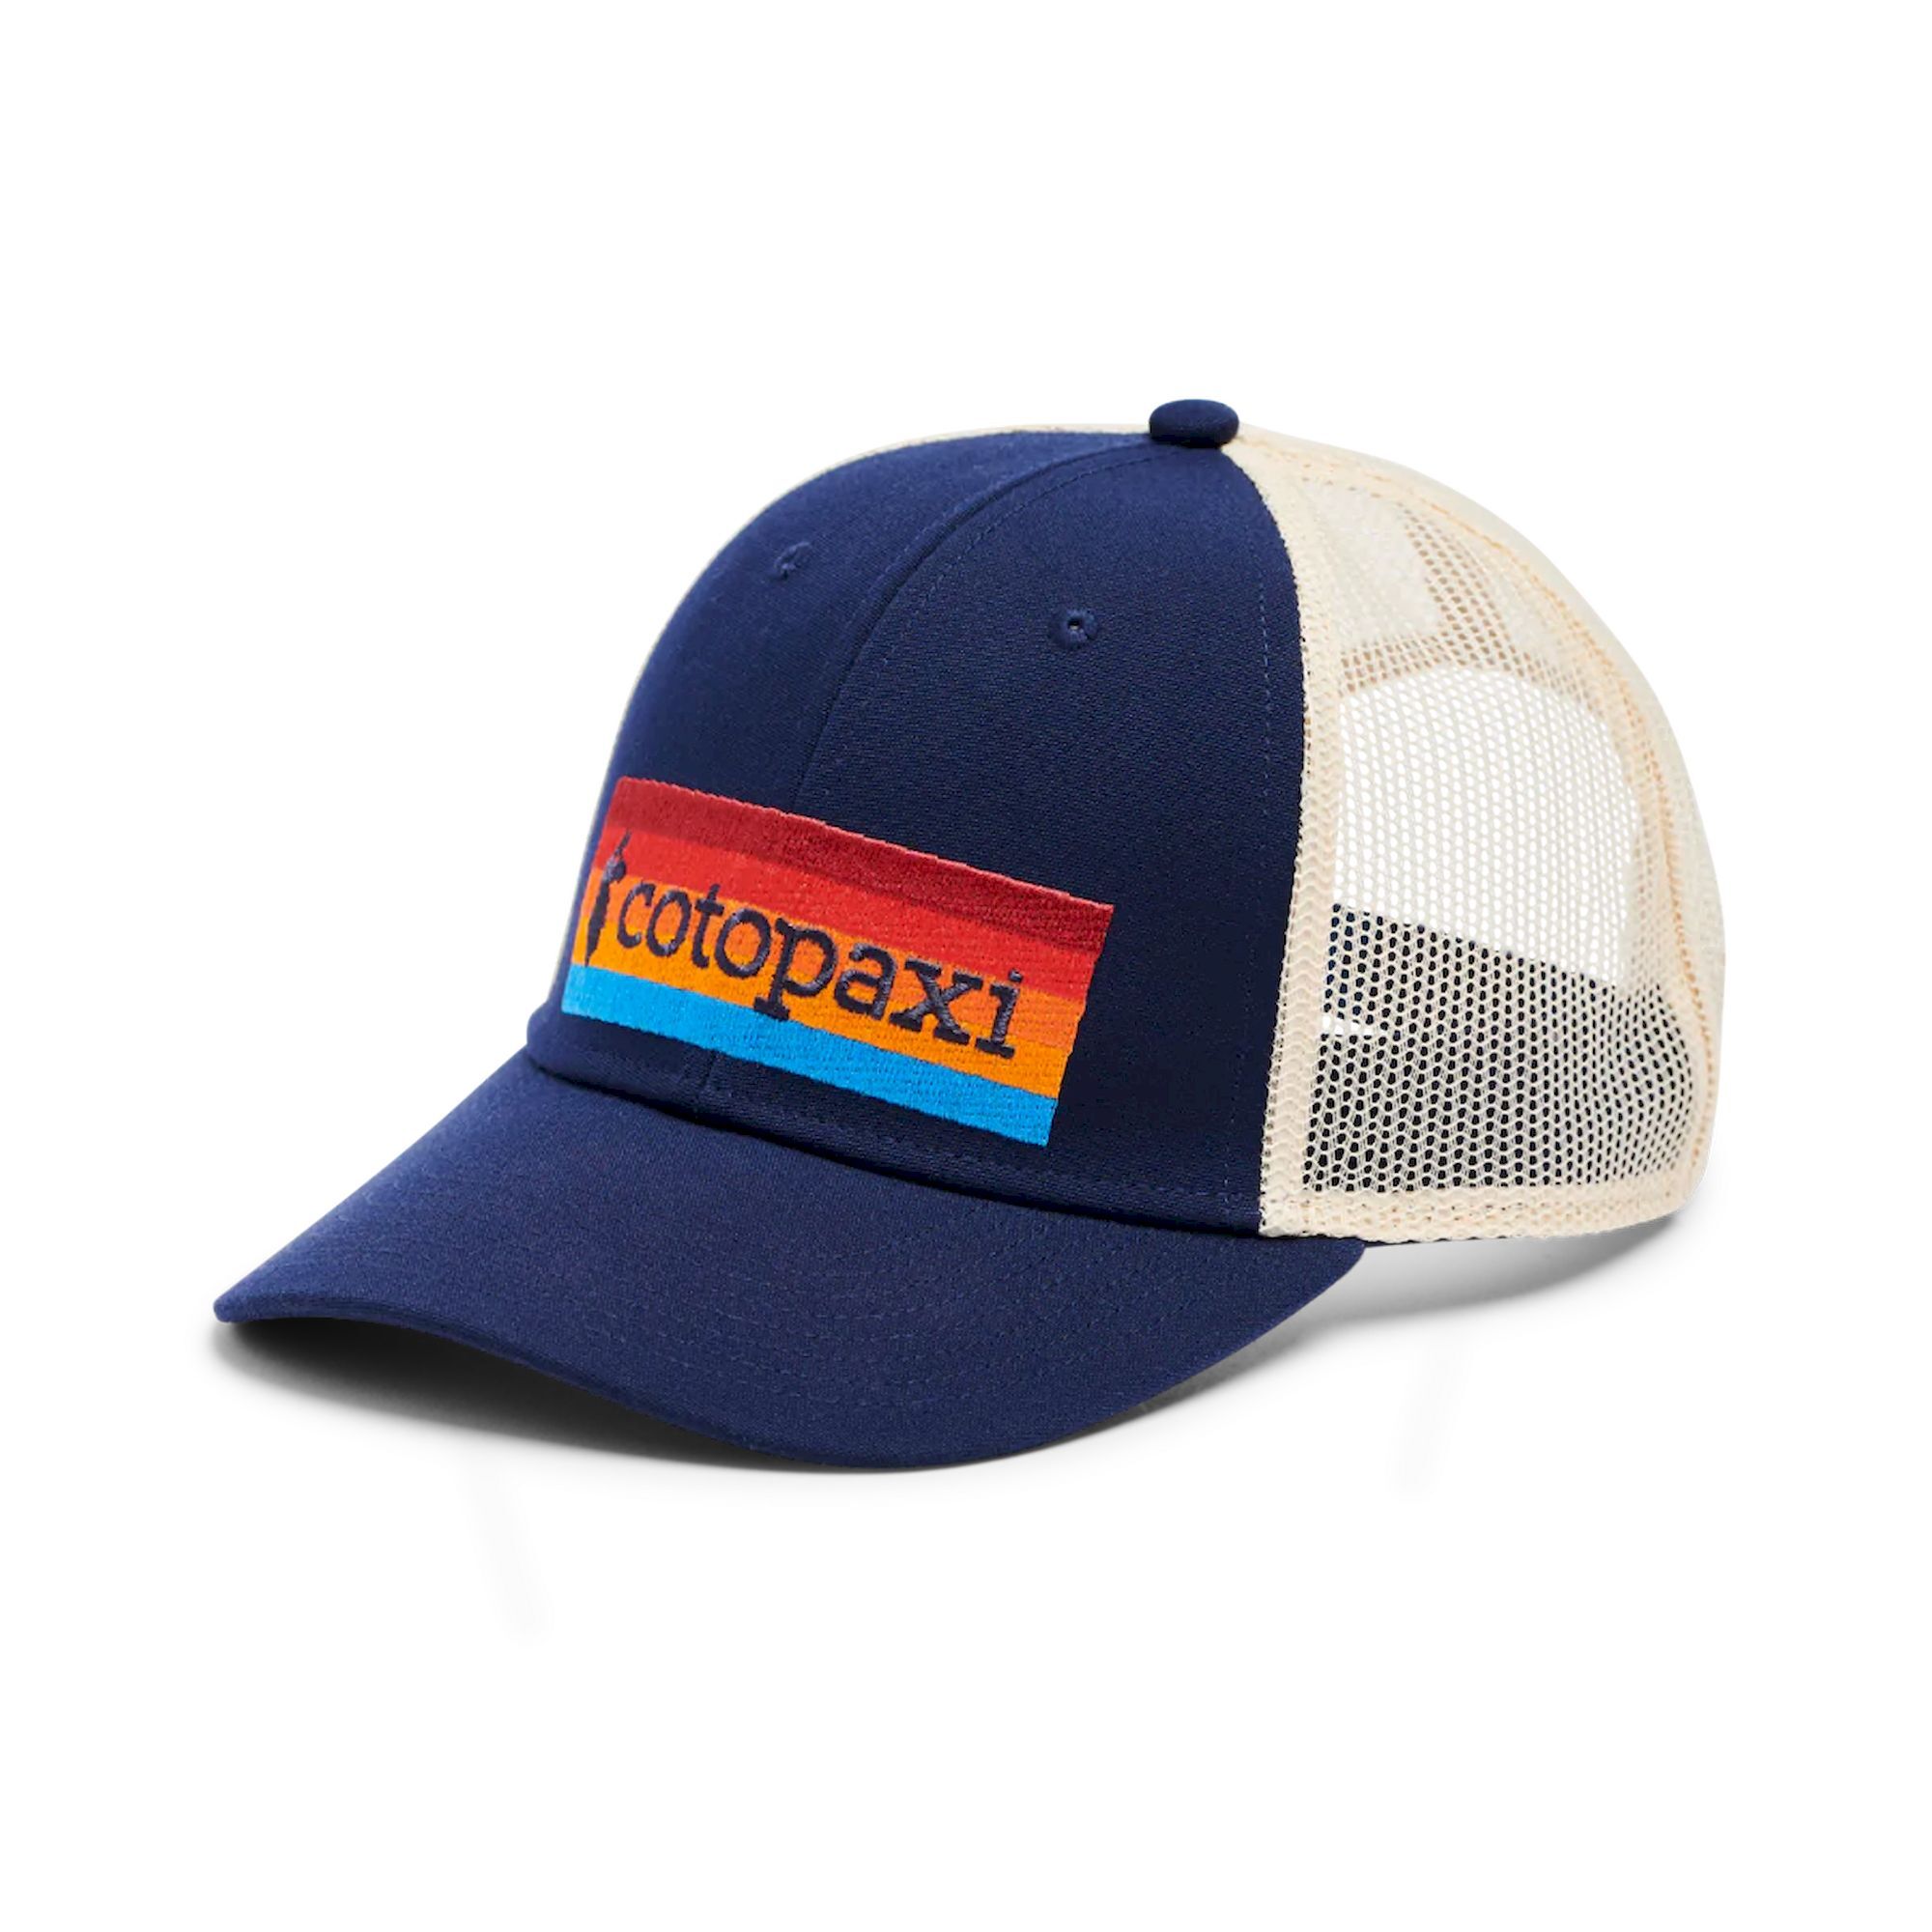 Cotopaxi On the Horizon Trucker Hat - Pet | Hardloop